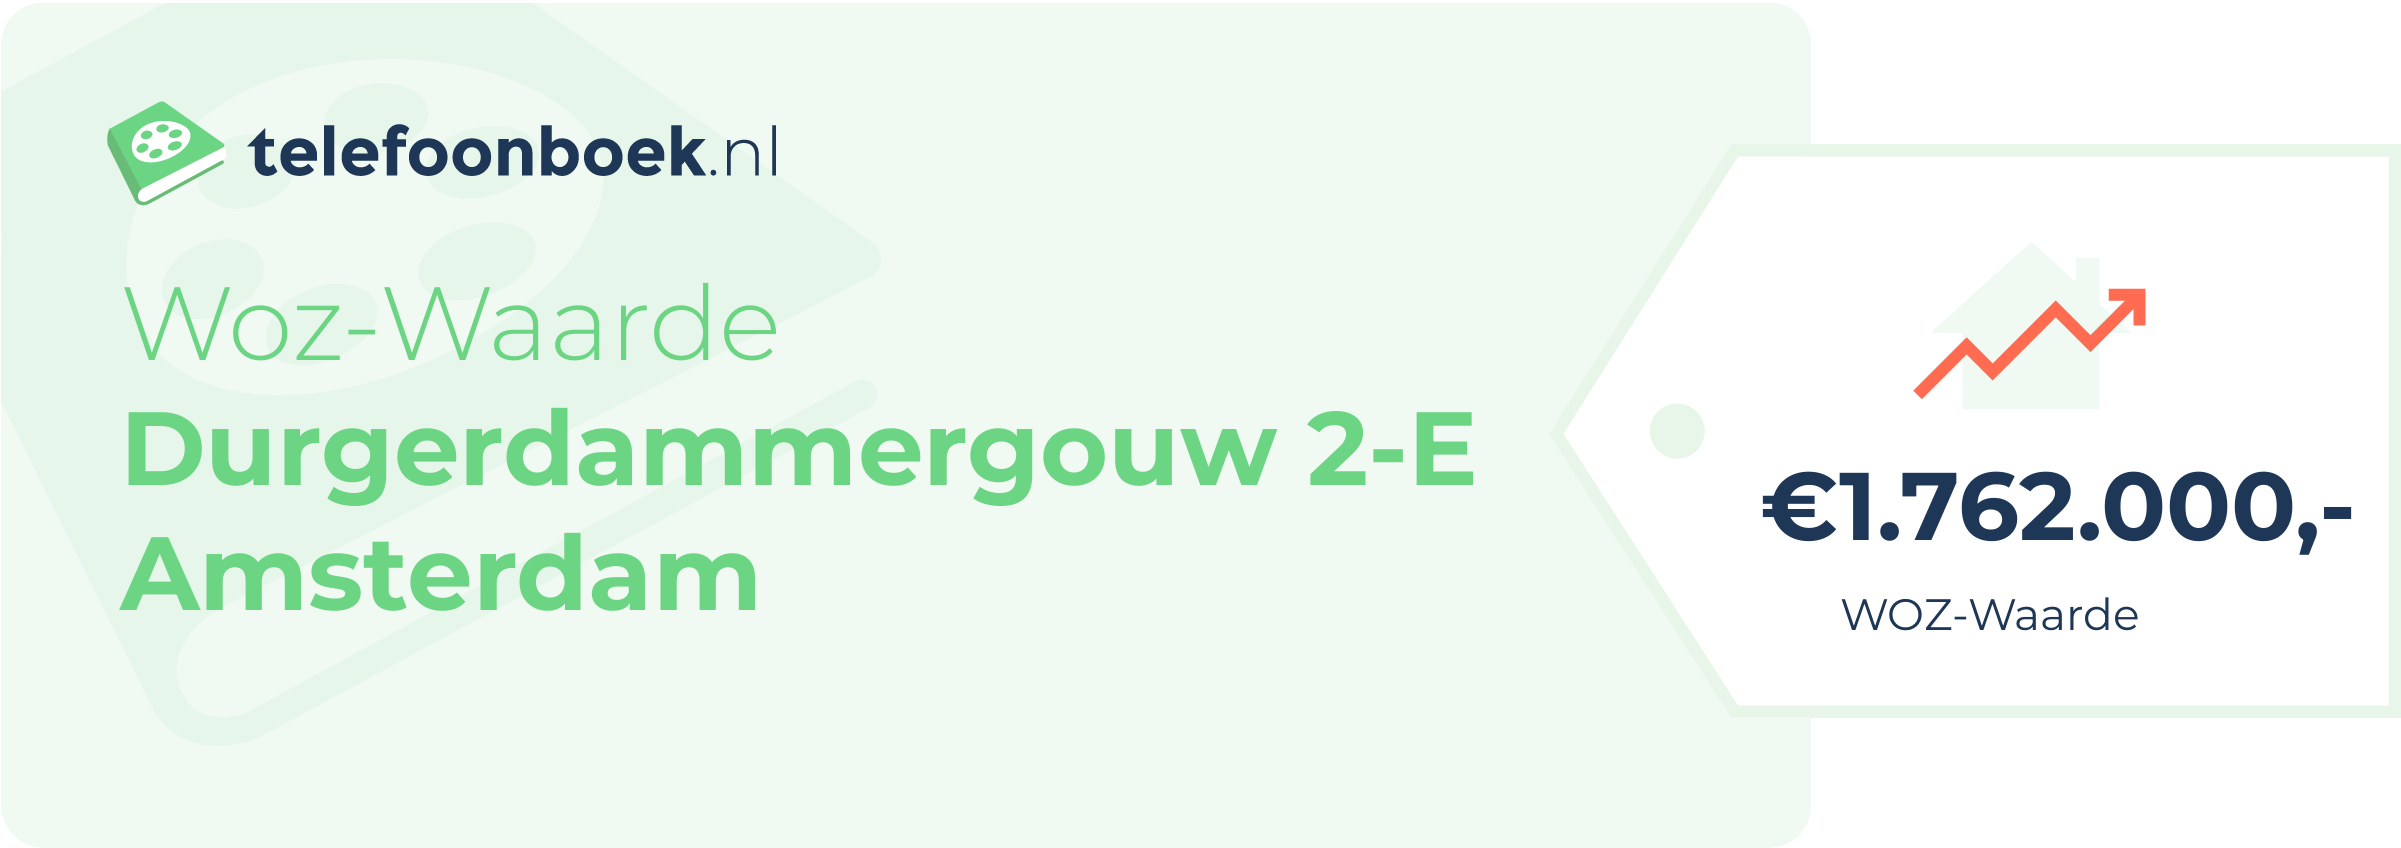 WOZ-waarde Durgerdammergouw 2-E Amsterdam